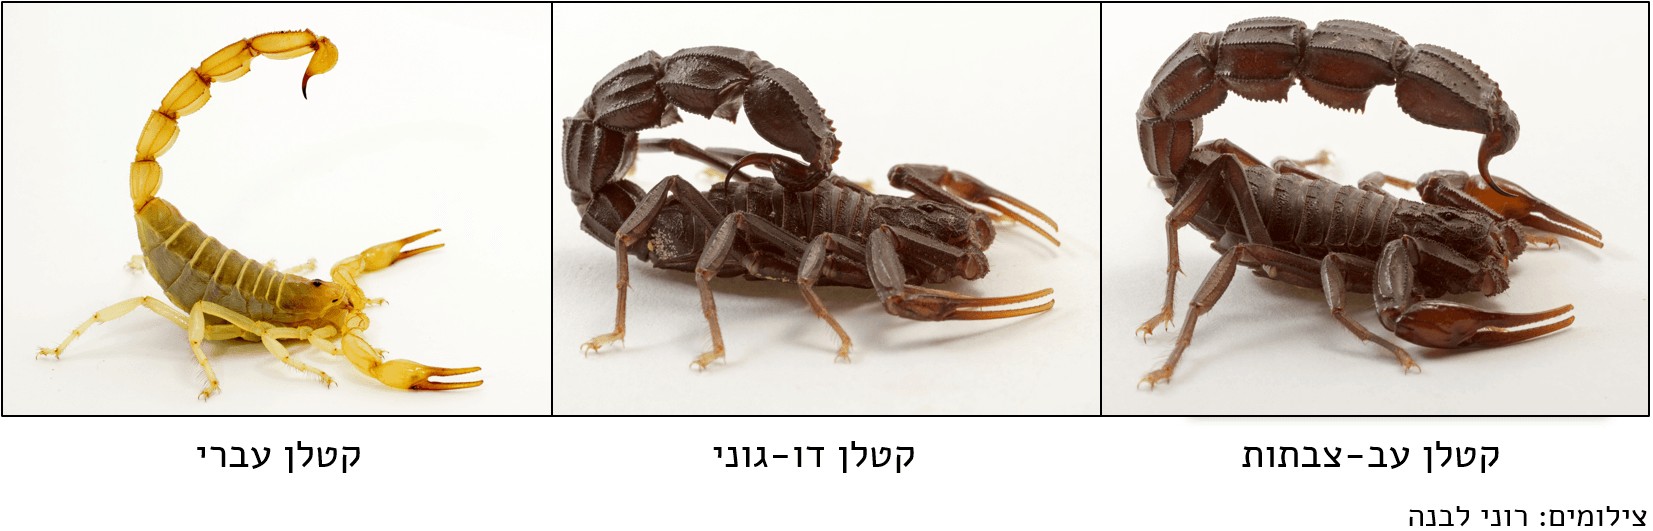 צילום של מיני העקרבים המסוכנים המצויים בישראל